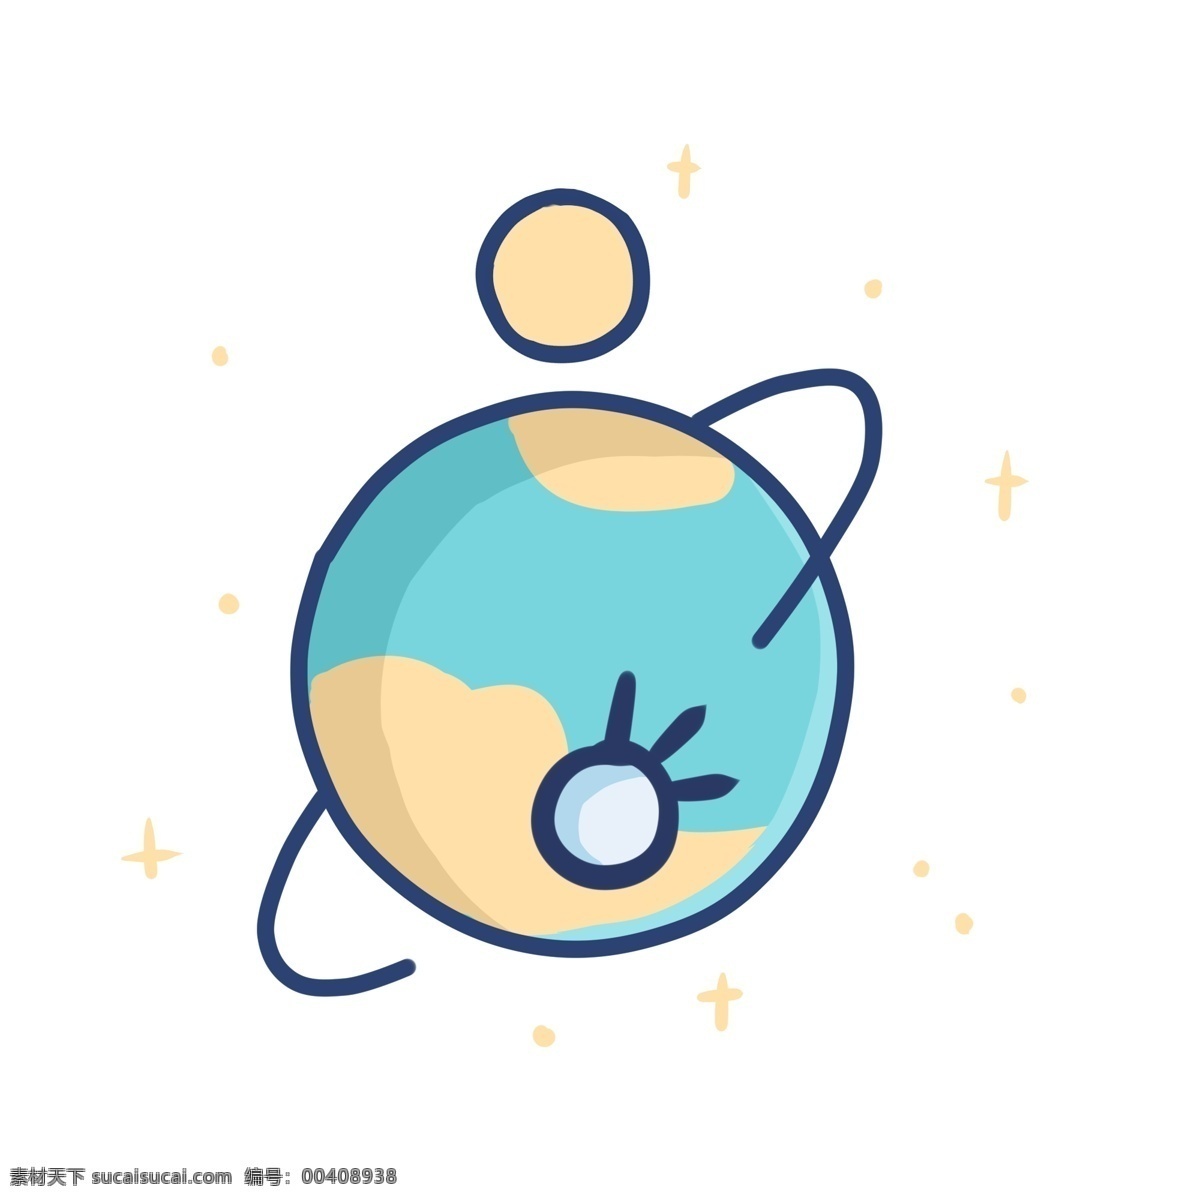 地球 圆形 图标 蓝色 淡蓝色 星空 太空 星系 创意